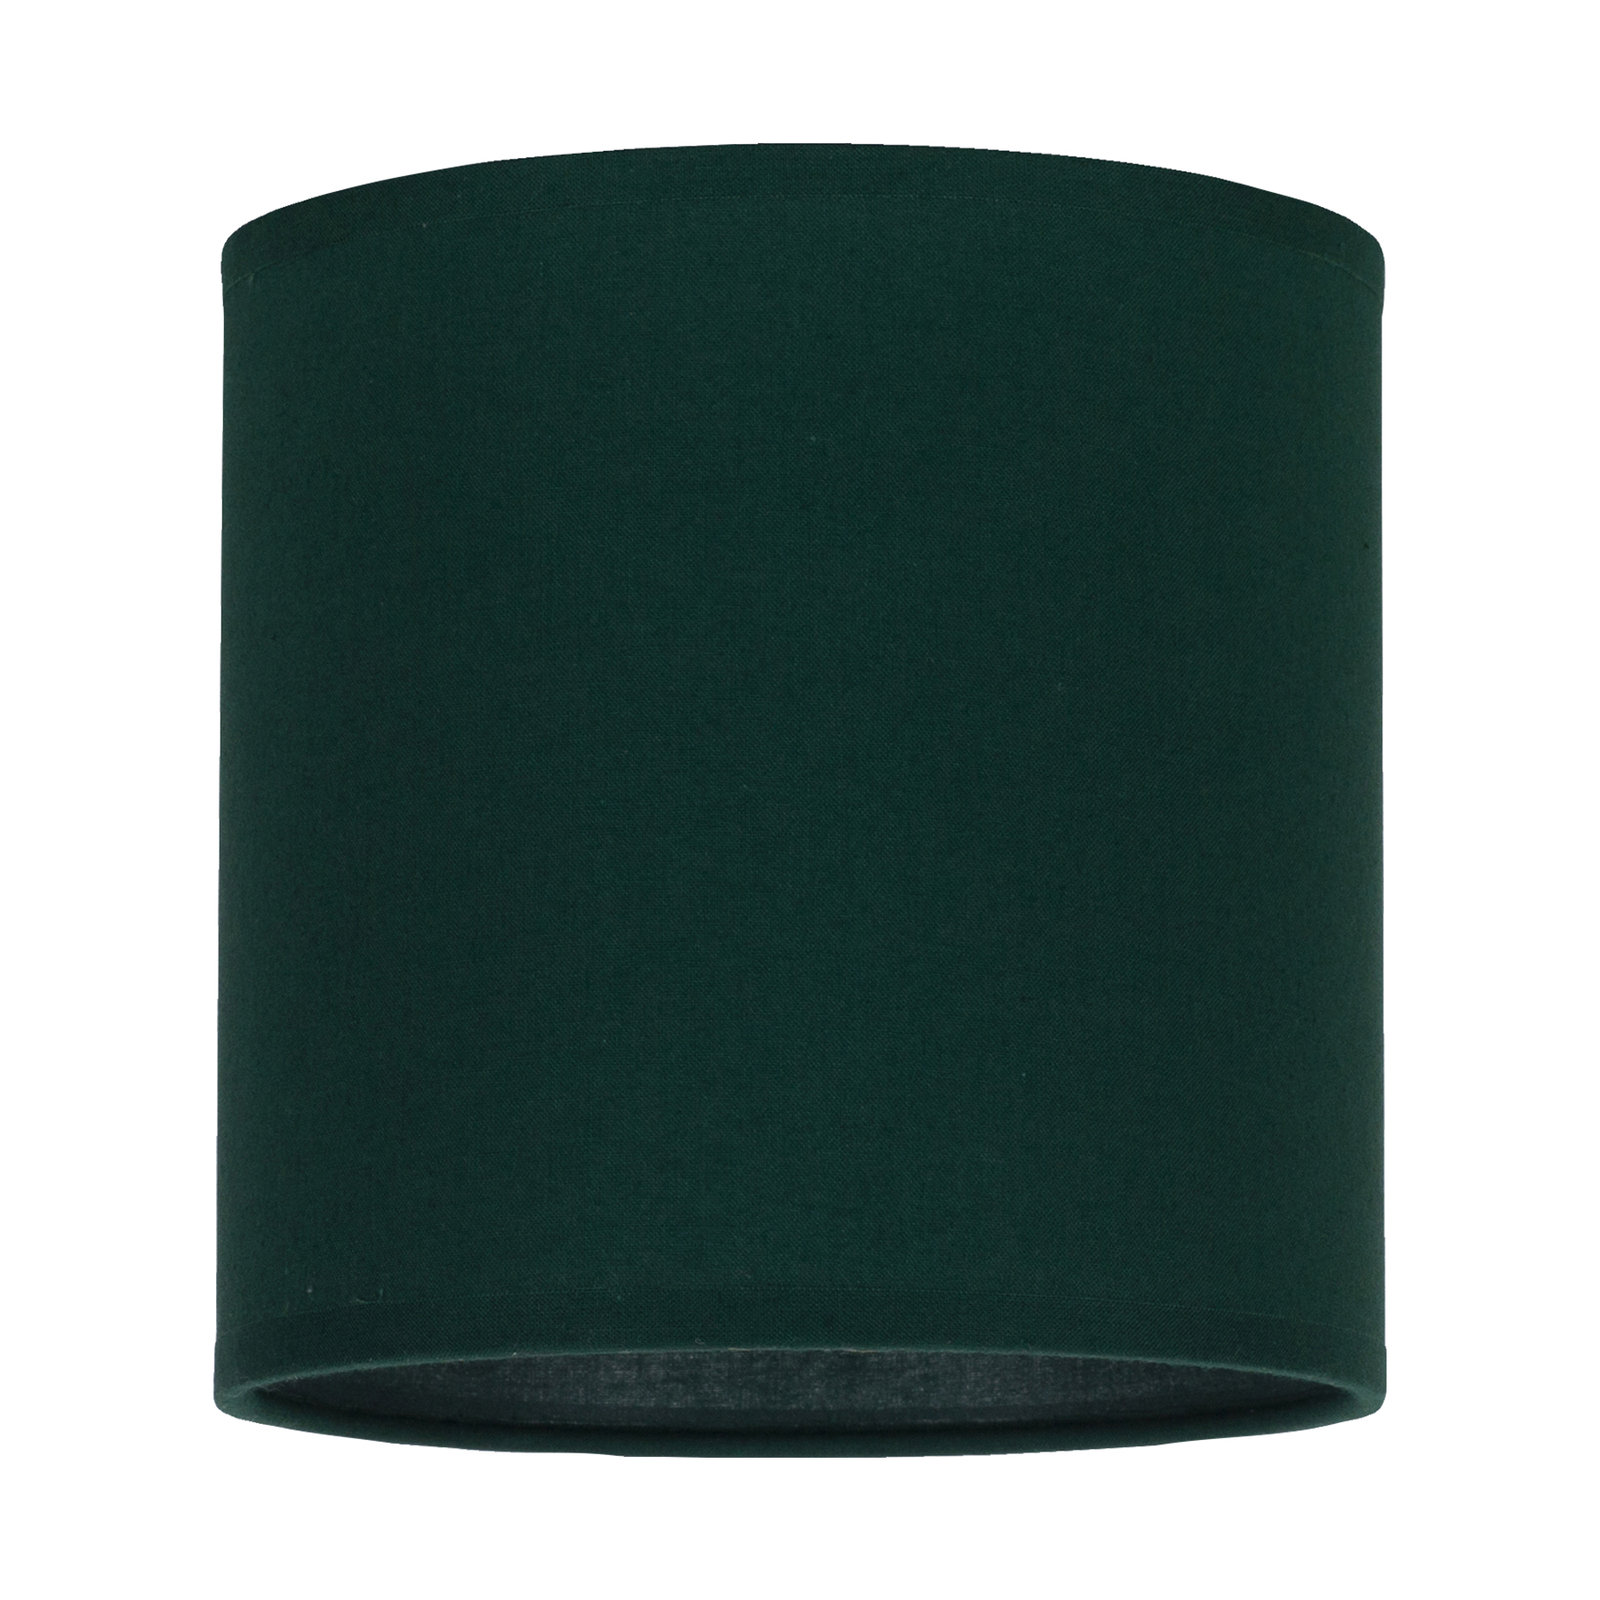 Klosz lampy Roller, zielony, Ø 15cm, wysokość 15cm